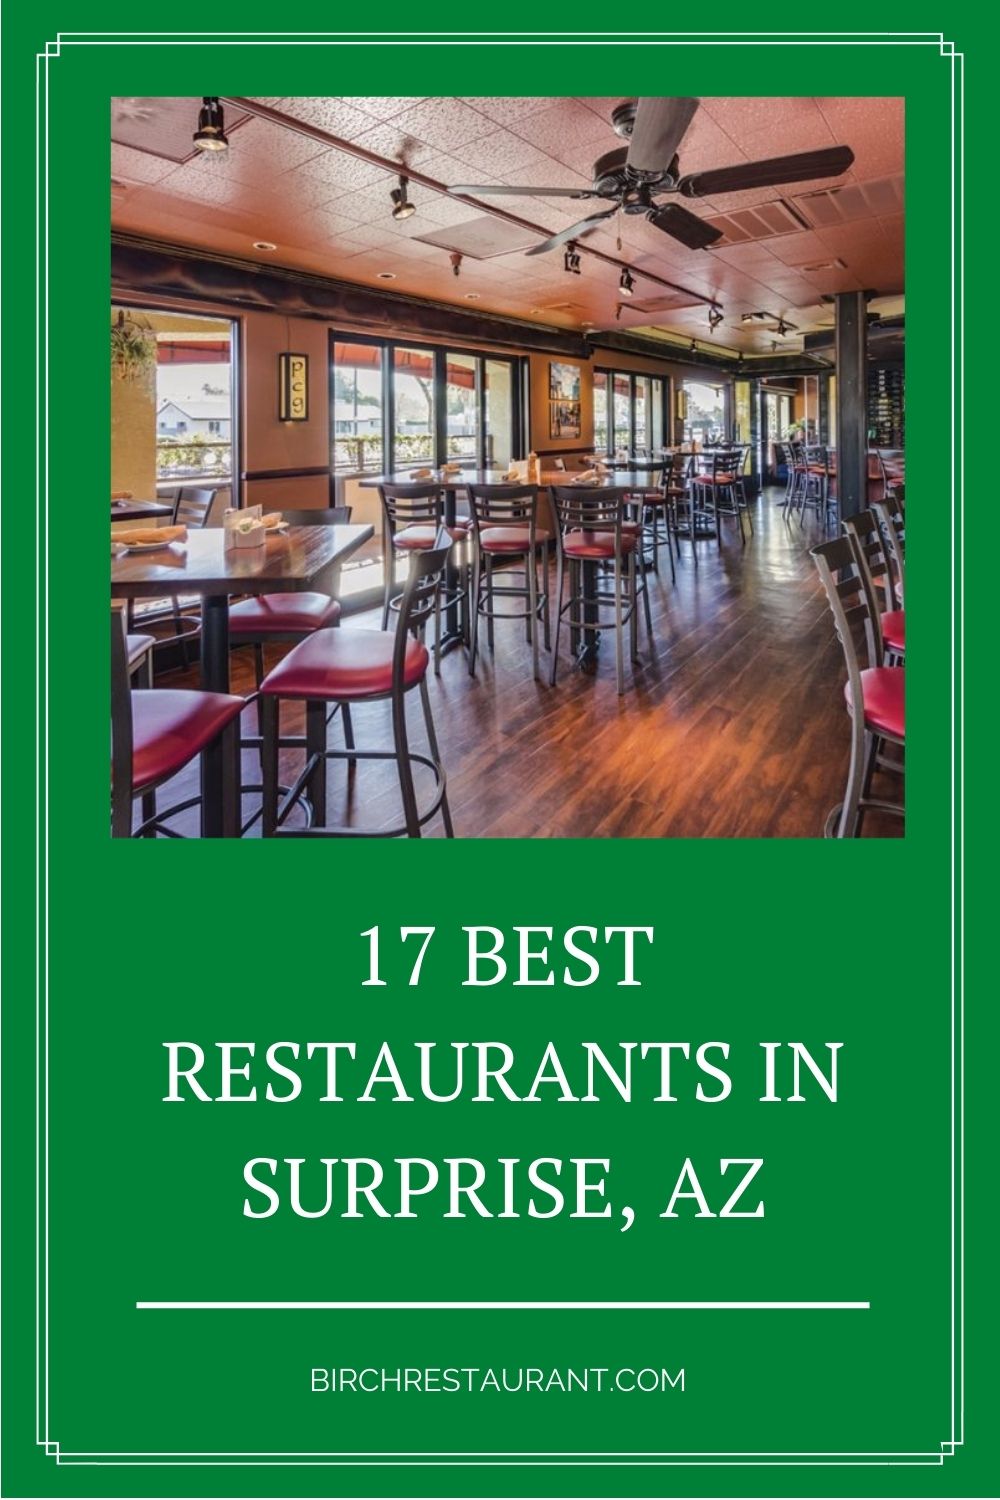 Best Restaurants in Surprise